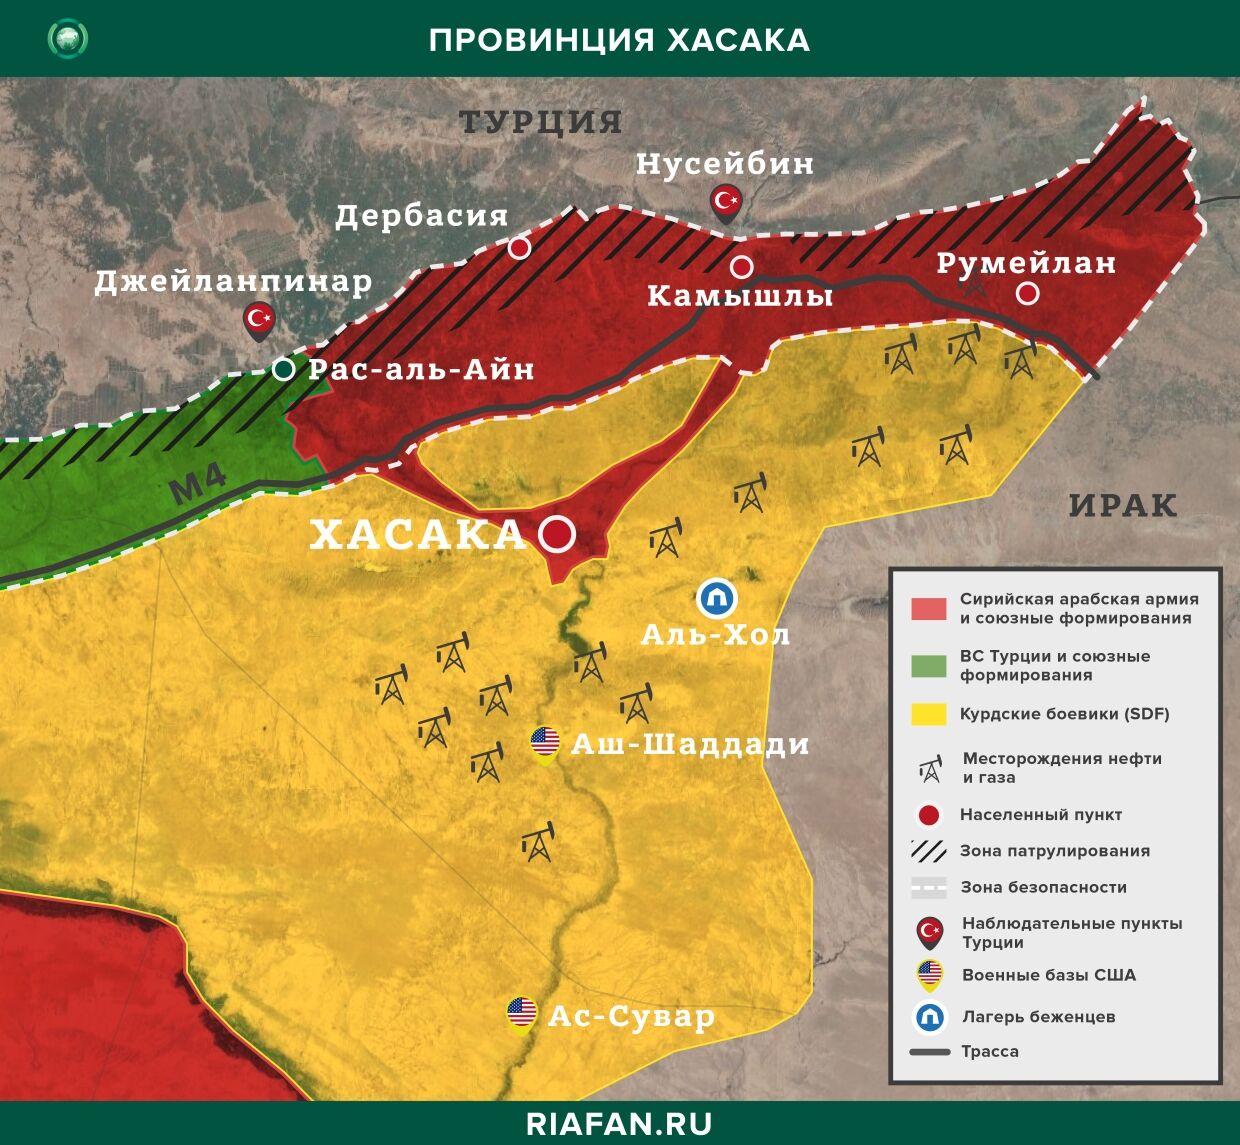 叙利亚新闻 26 可能 22.30: 亲土耳其武装分子抢劫 Hasaka 居民, 在 Dar'a SAA 将建造 20 新东西